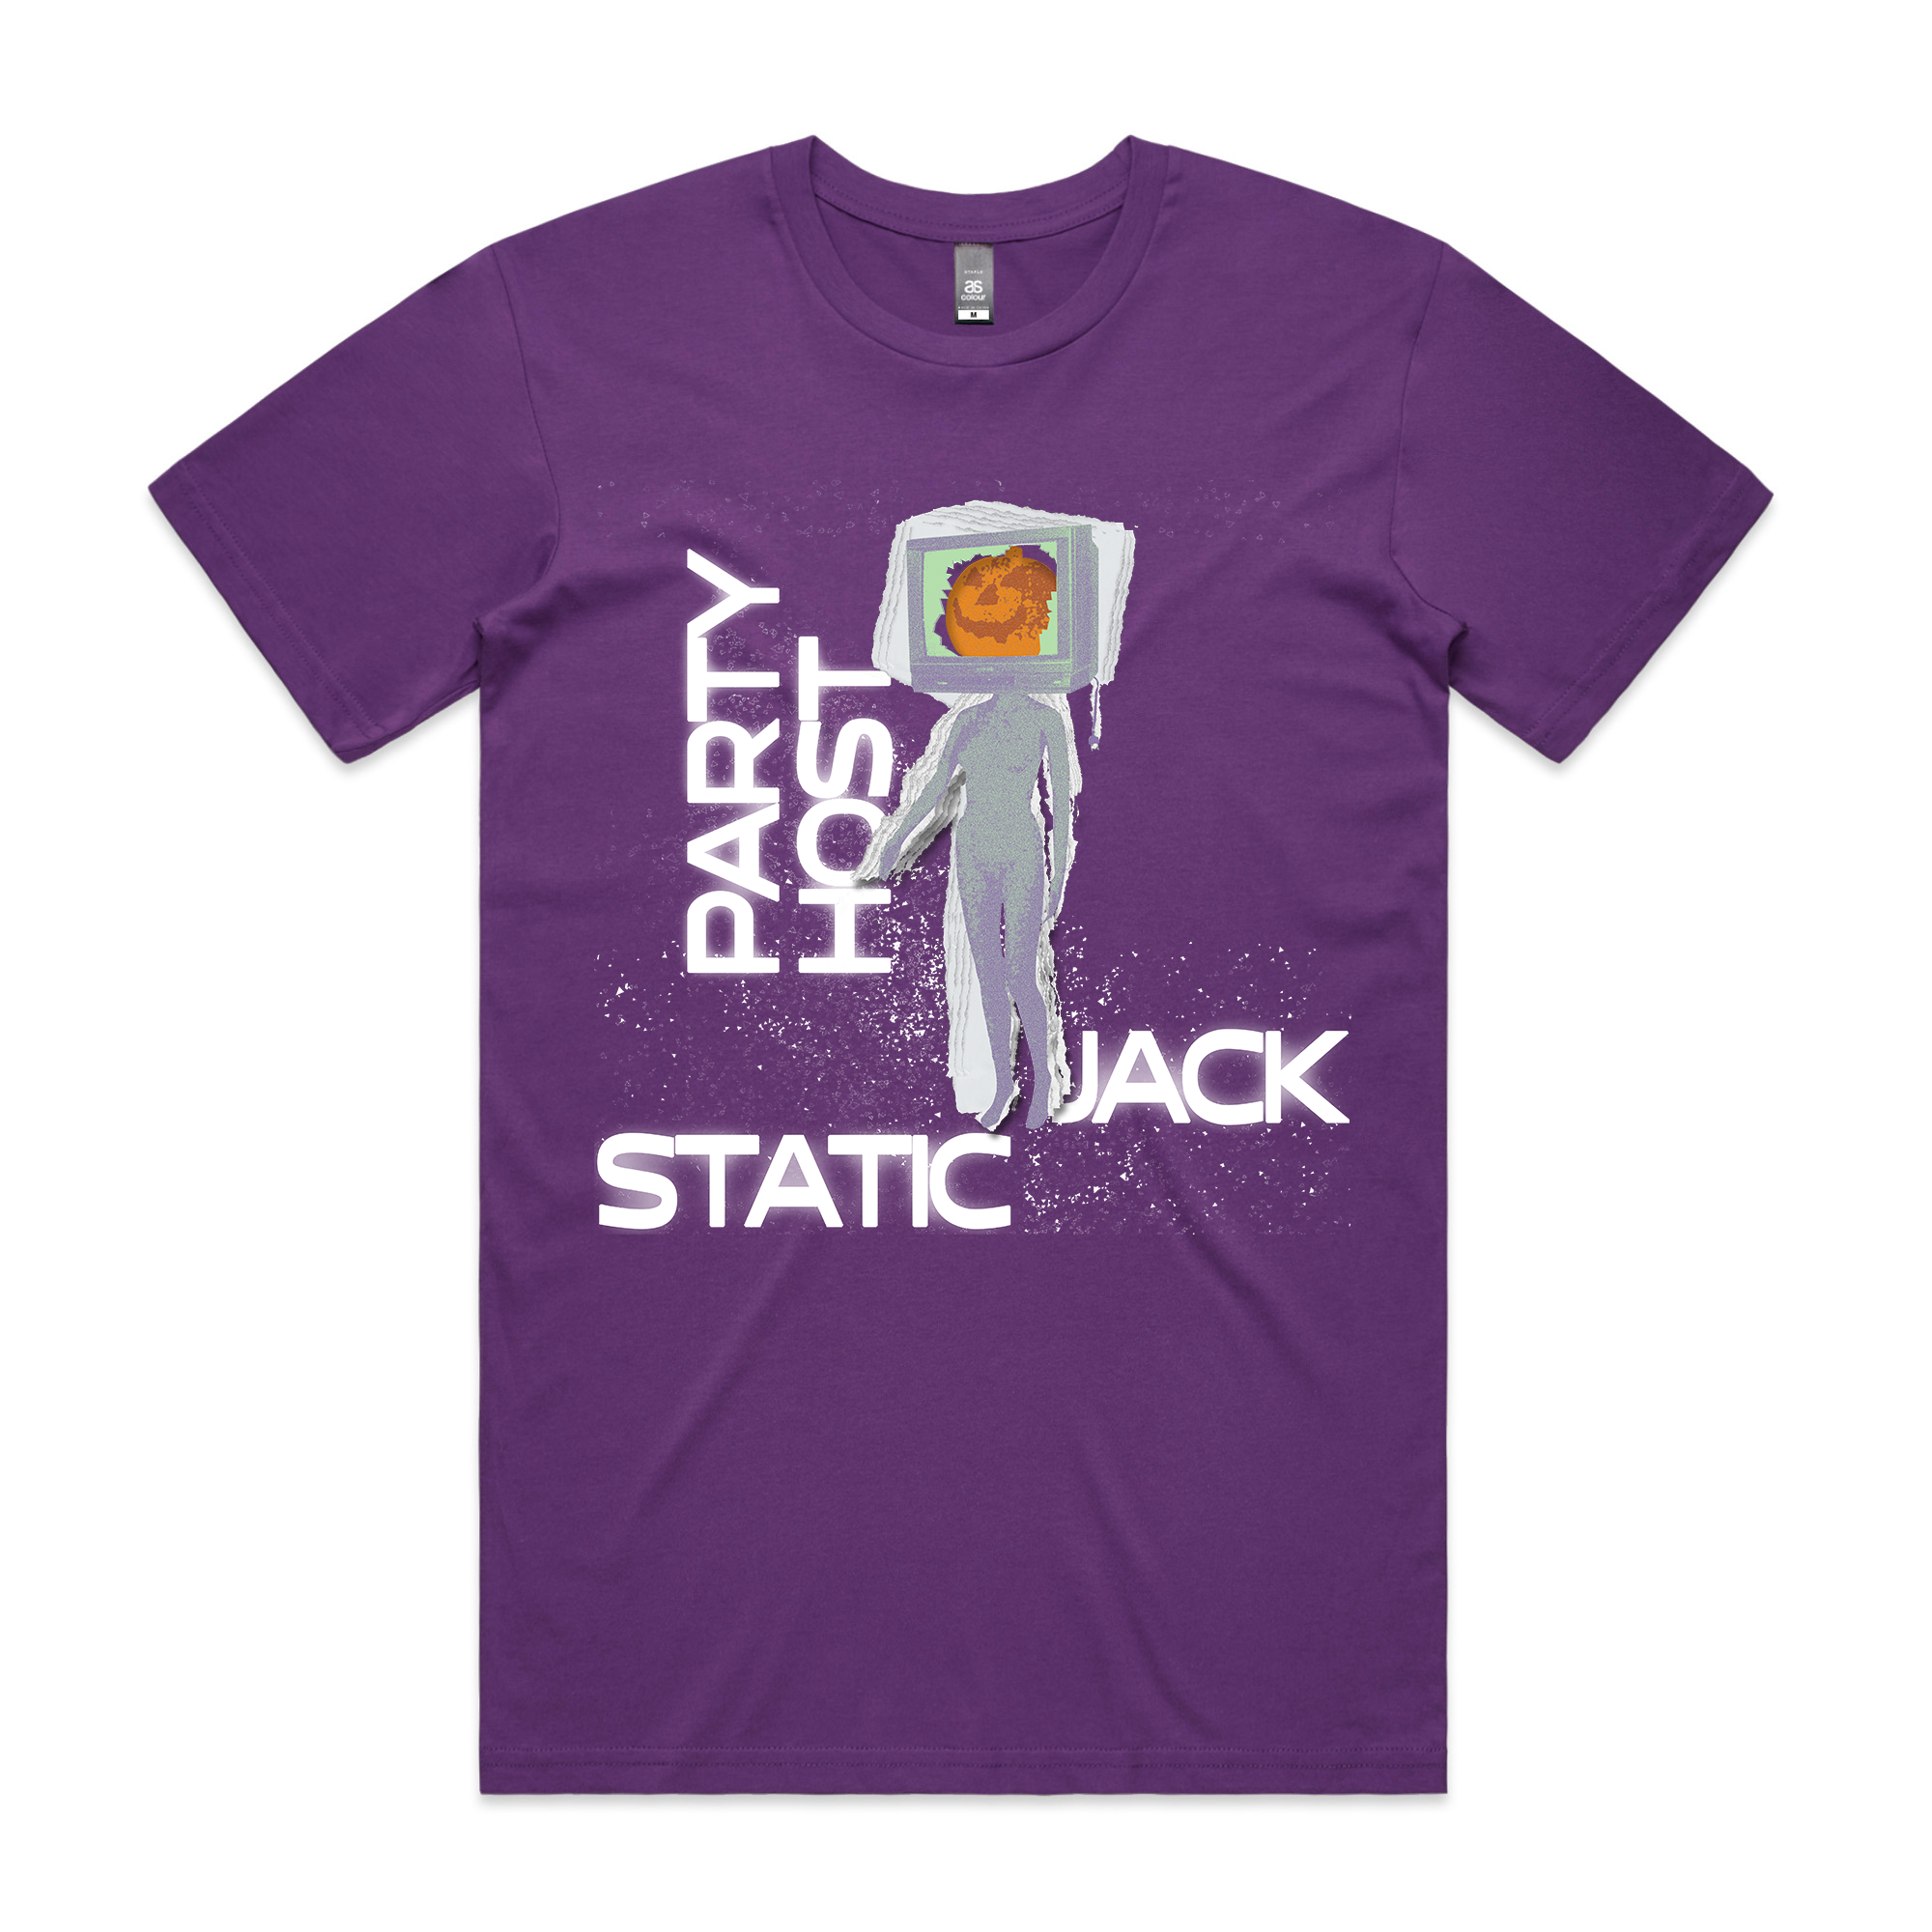 Static Jack Tee